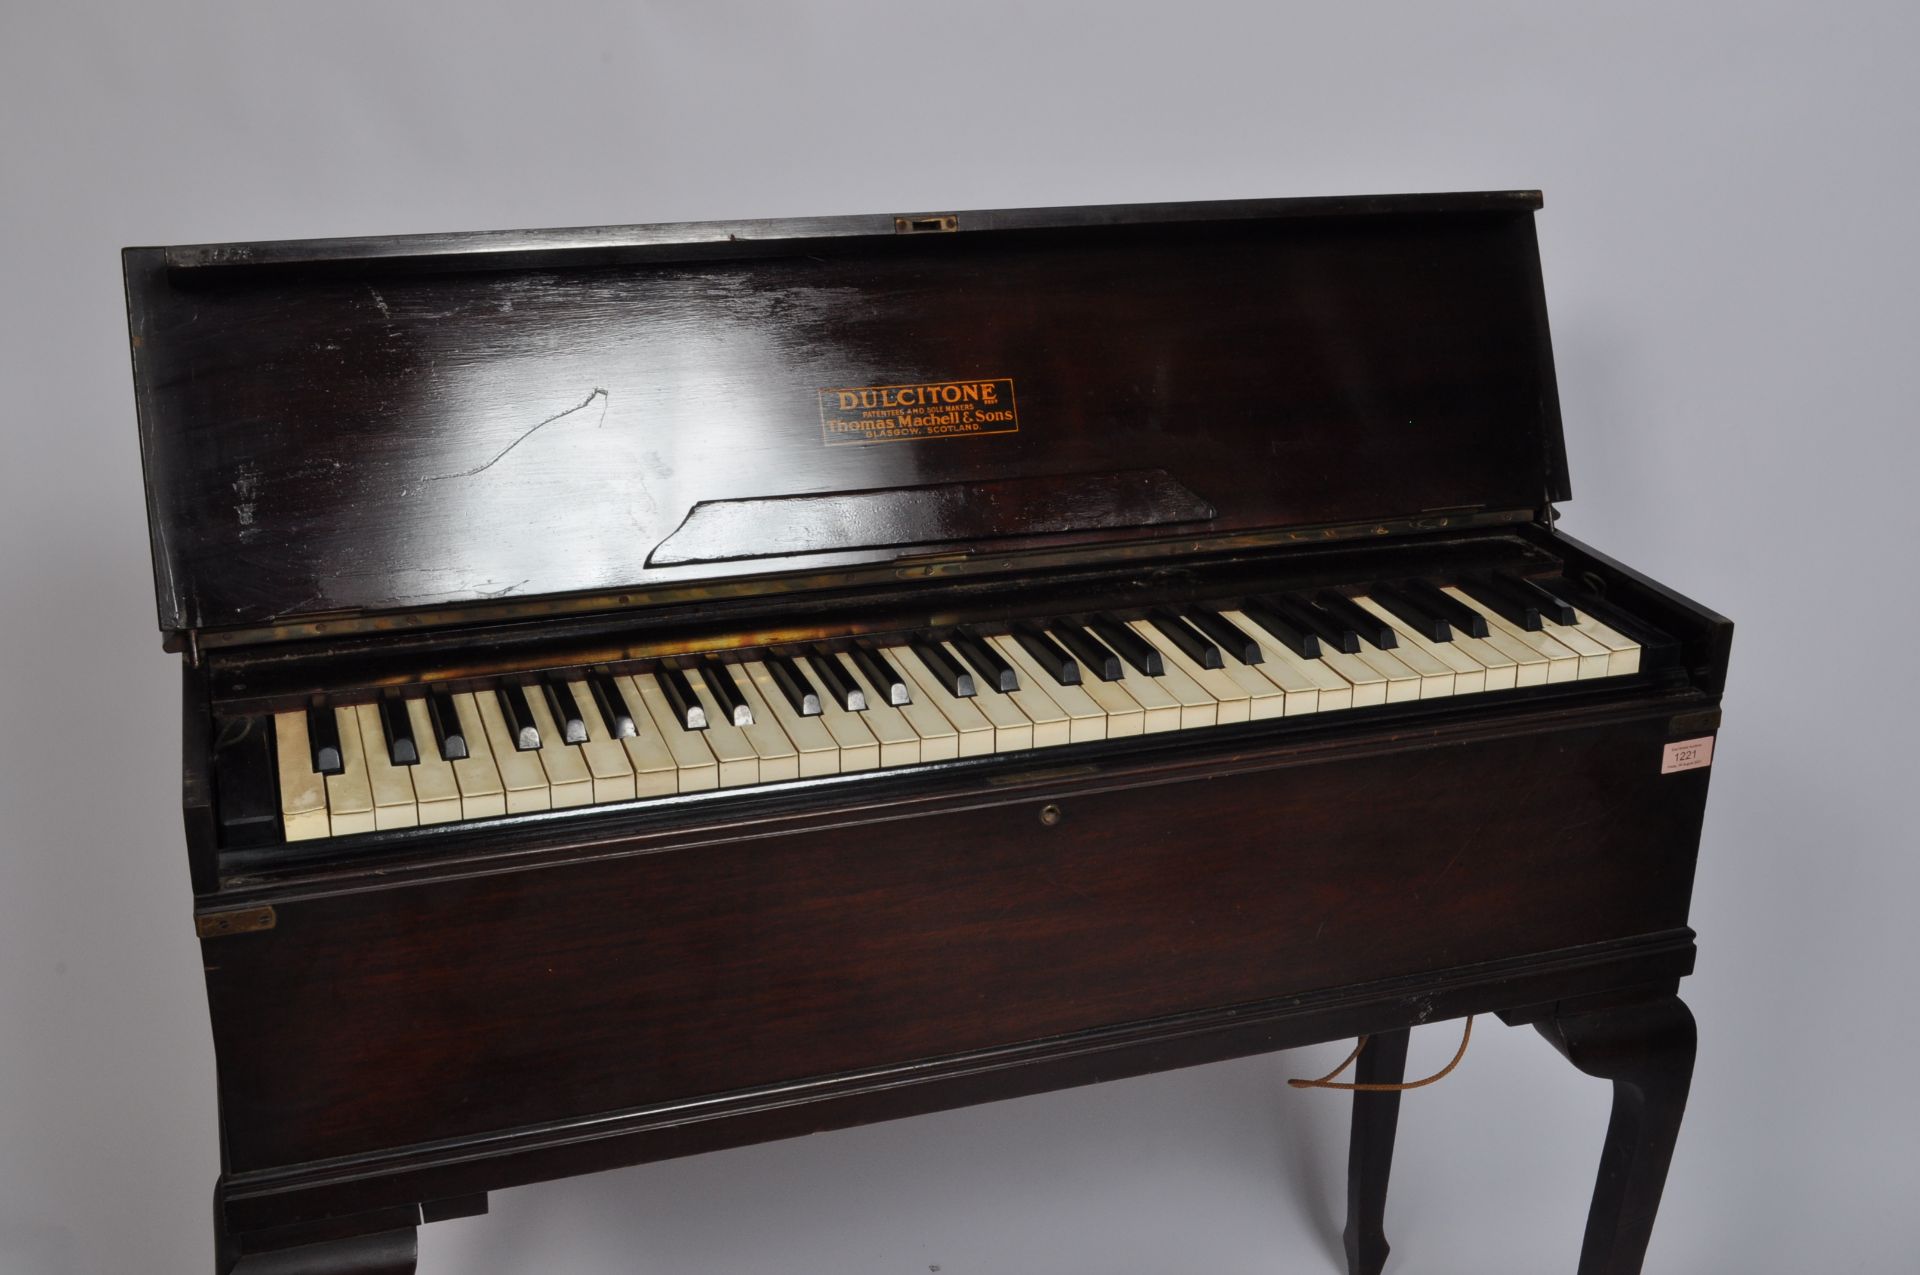 1930’S ART DECO DULCITONE PORTABLE PIANO - Image 2 of 4